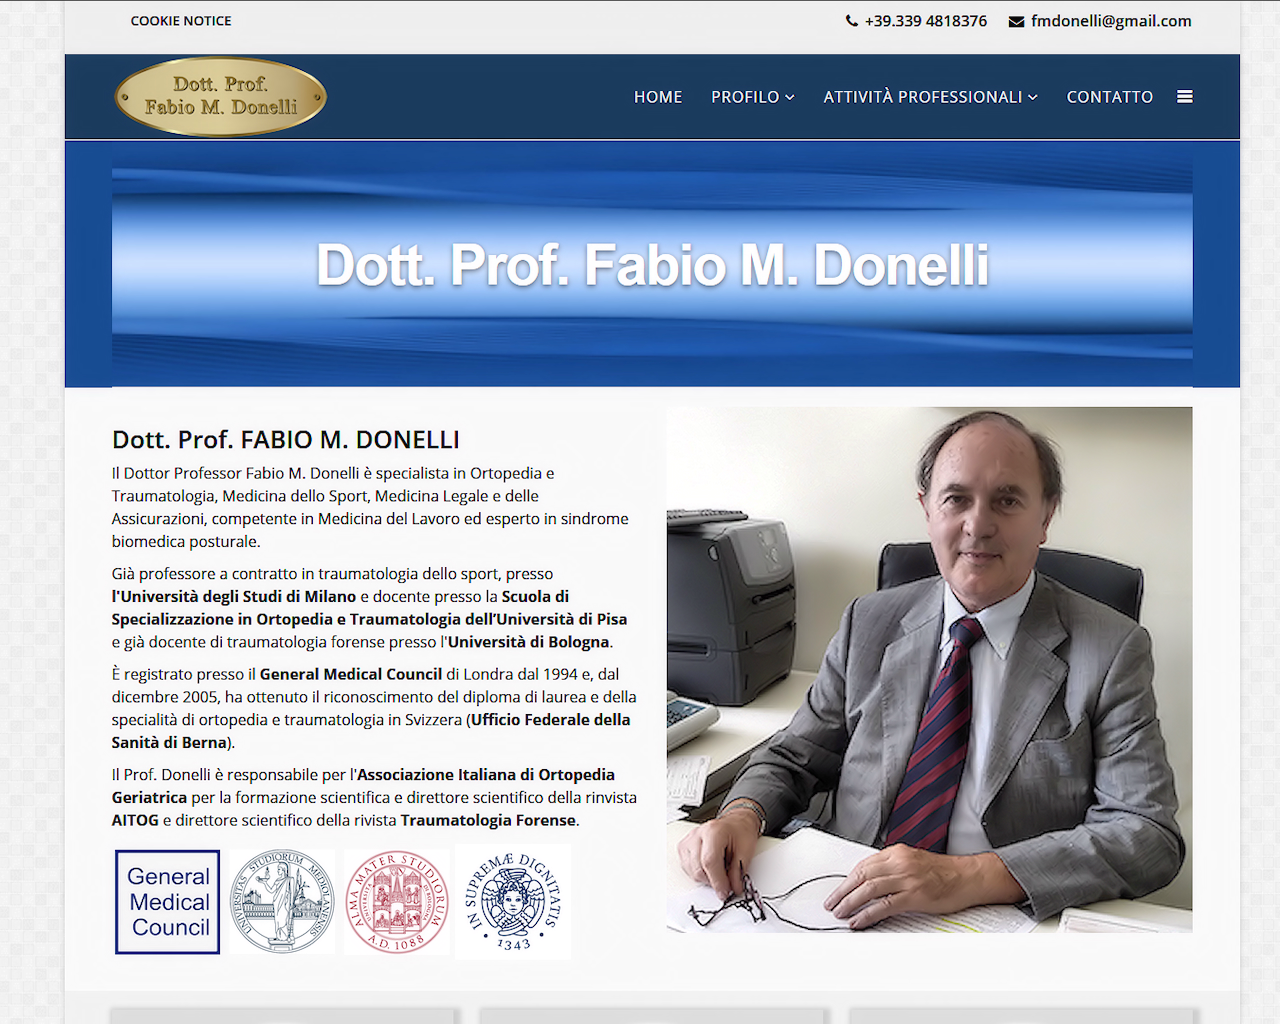 Dott. Prof. F. M. Donelli